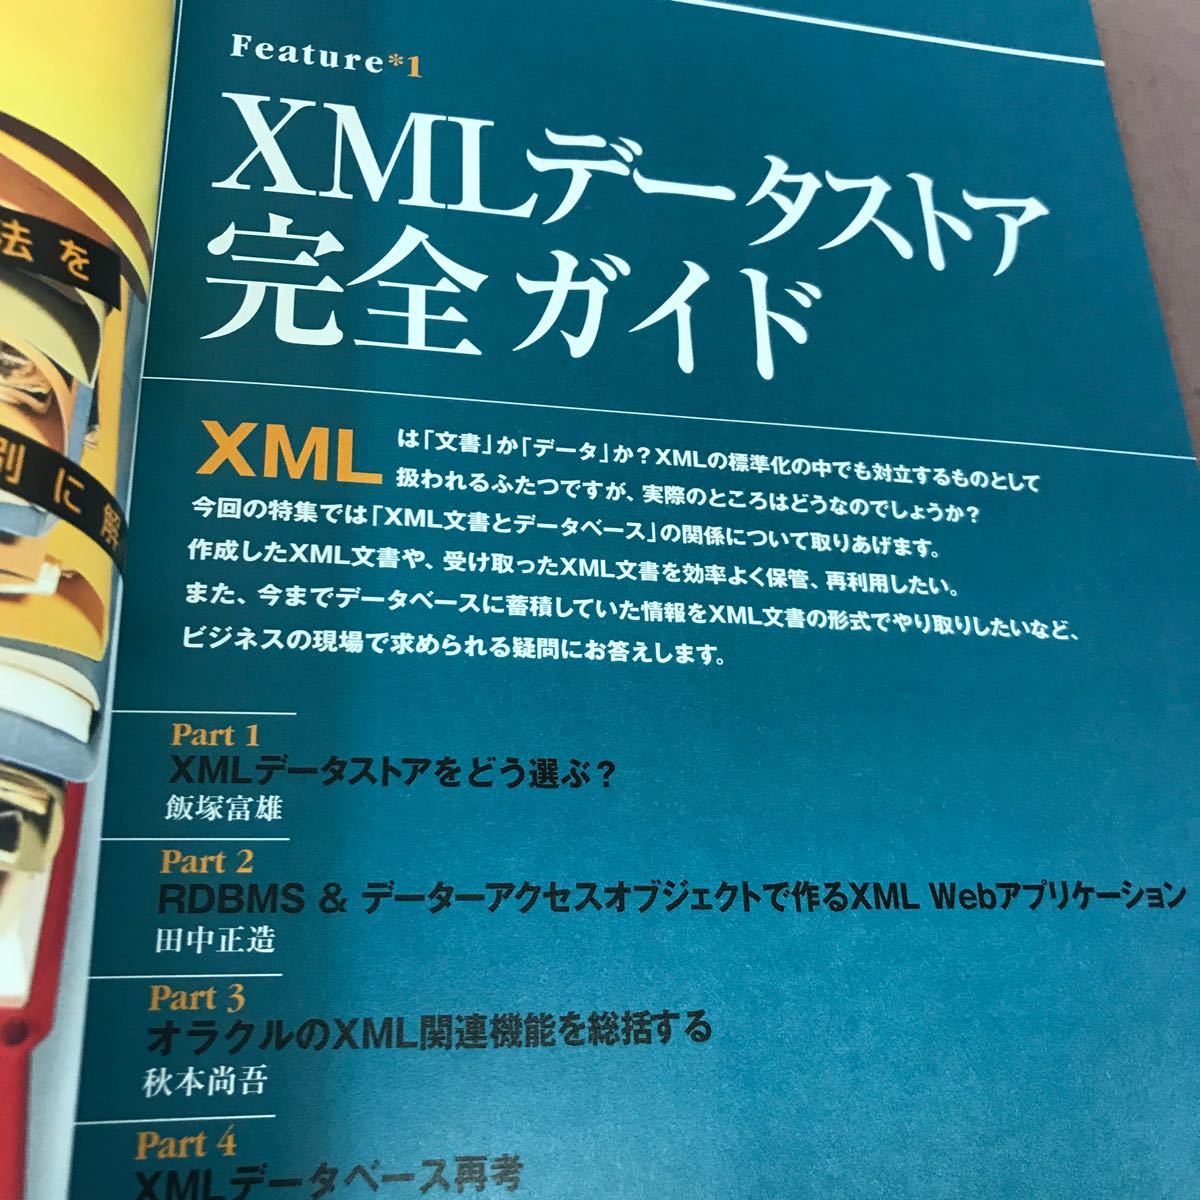 E61-184 XML MAGAZINE 2001.04 XML данные магазин полное руководство XML технология стандарт .. на данный момент др. 2001 год 4 месяц 1 день выпуск CD-ROM имеется 